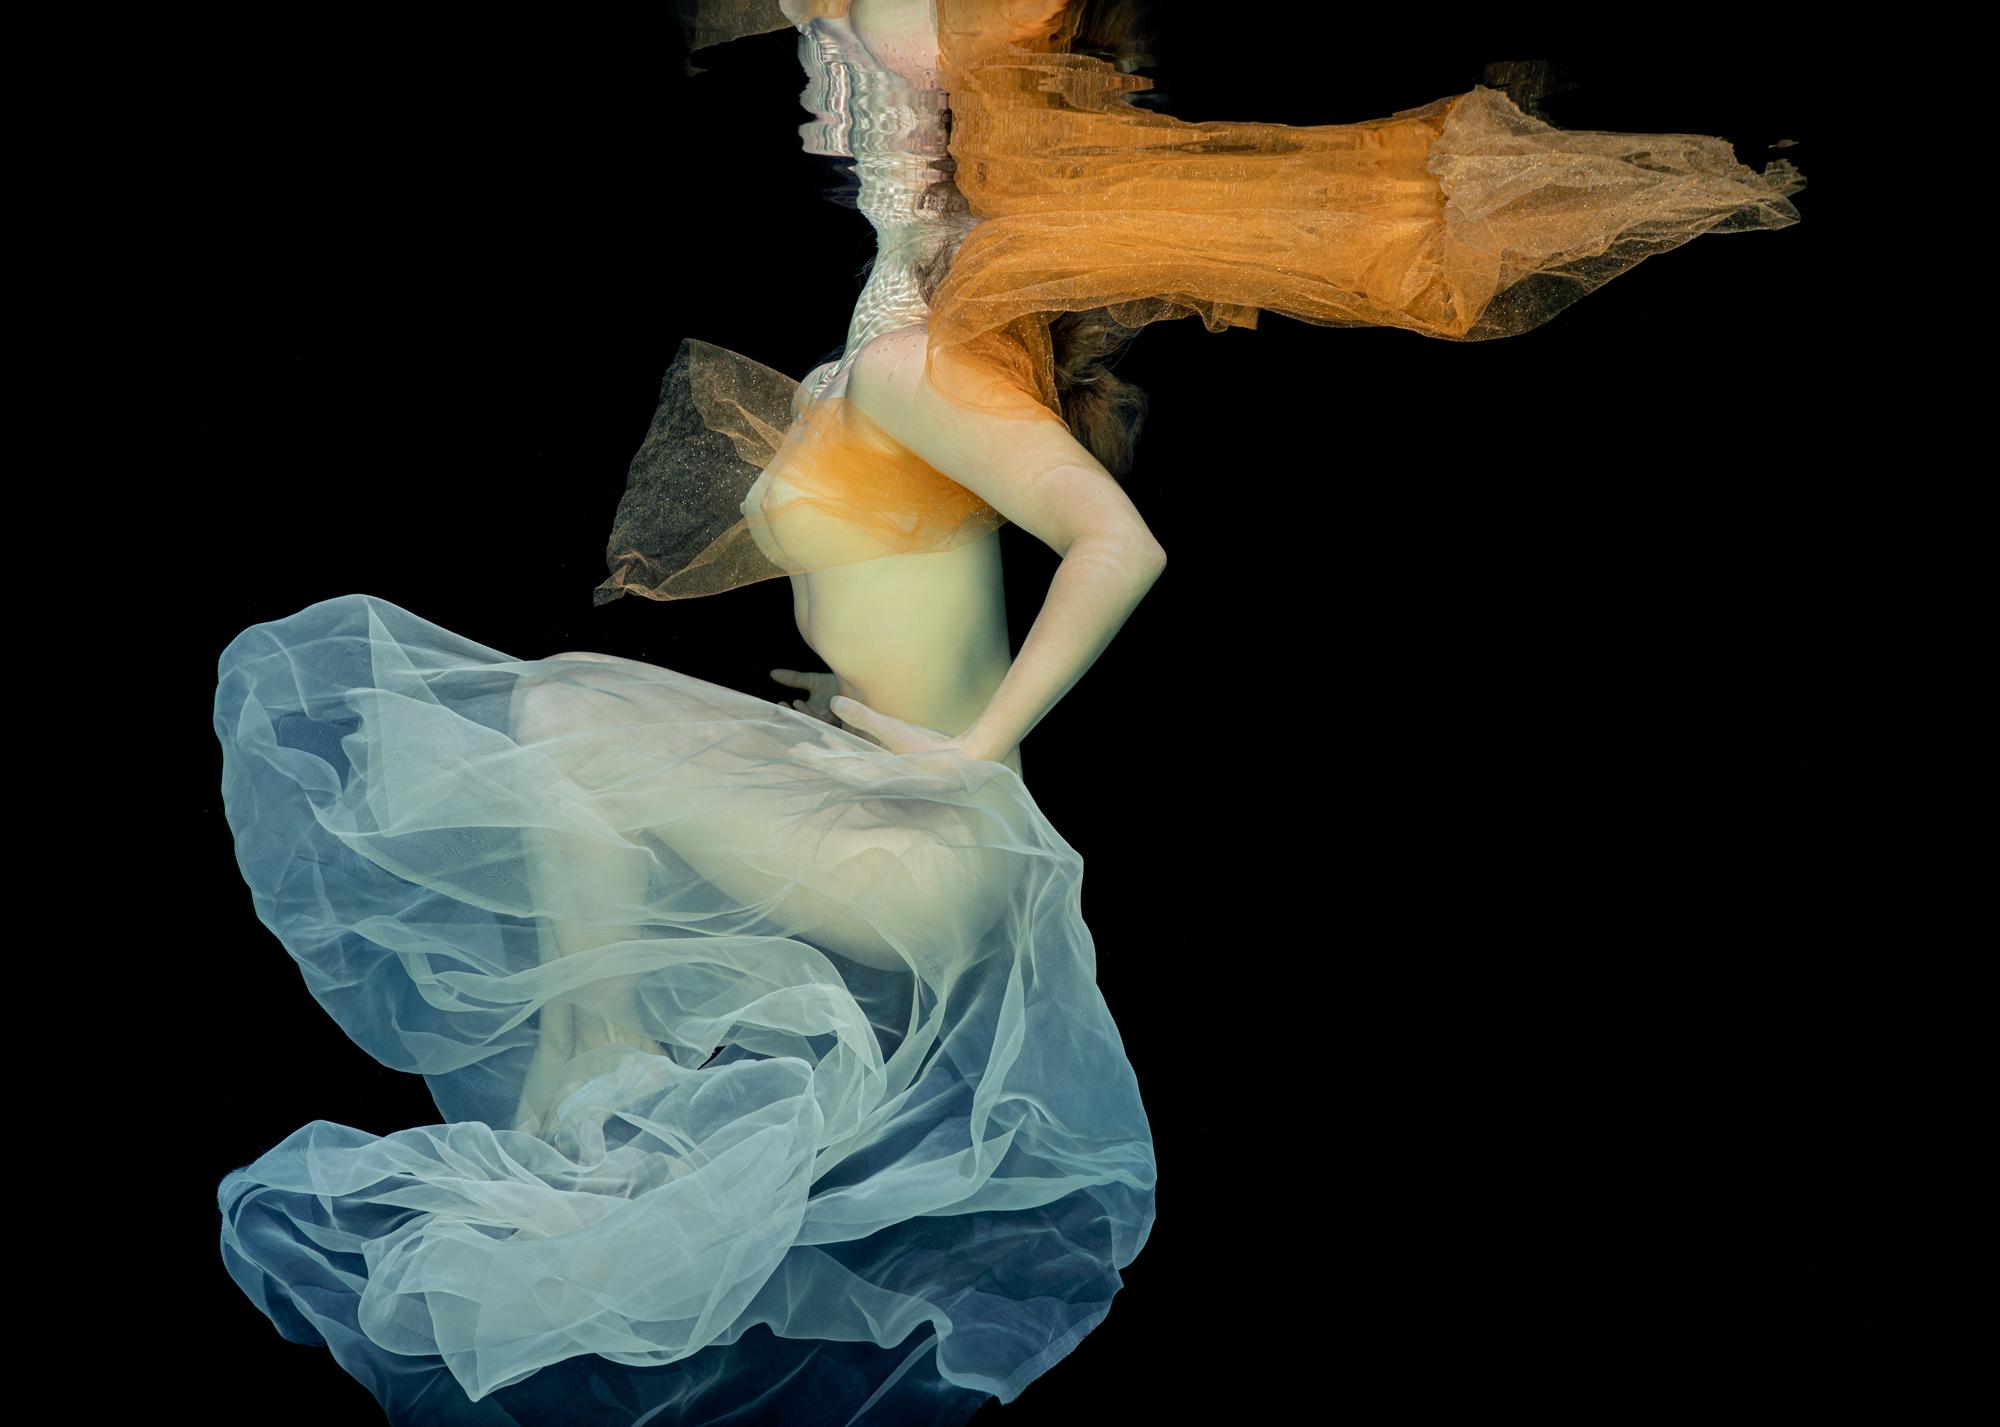 Her Majesty – Aktfotografie im Unterwasser – Druck auf Papier 18 x 24